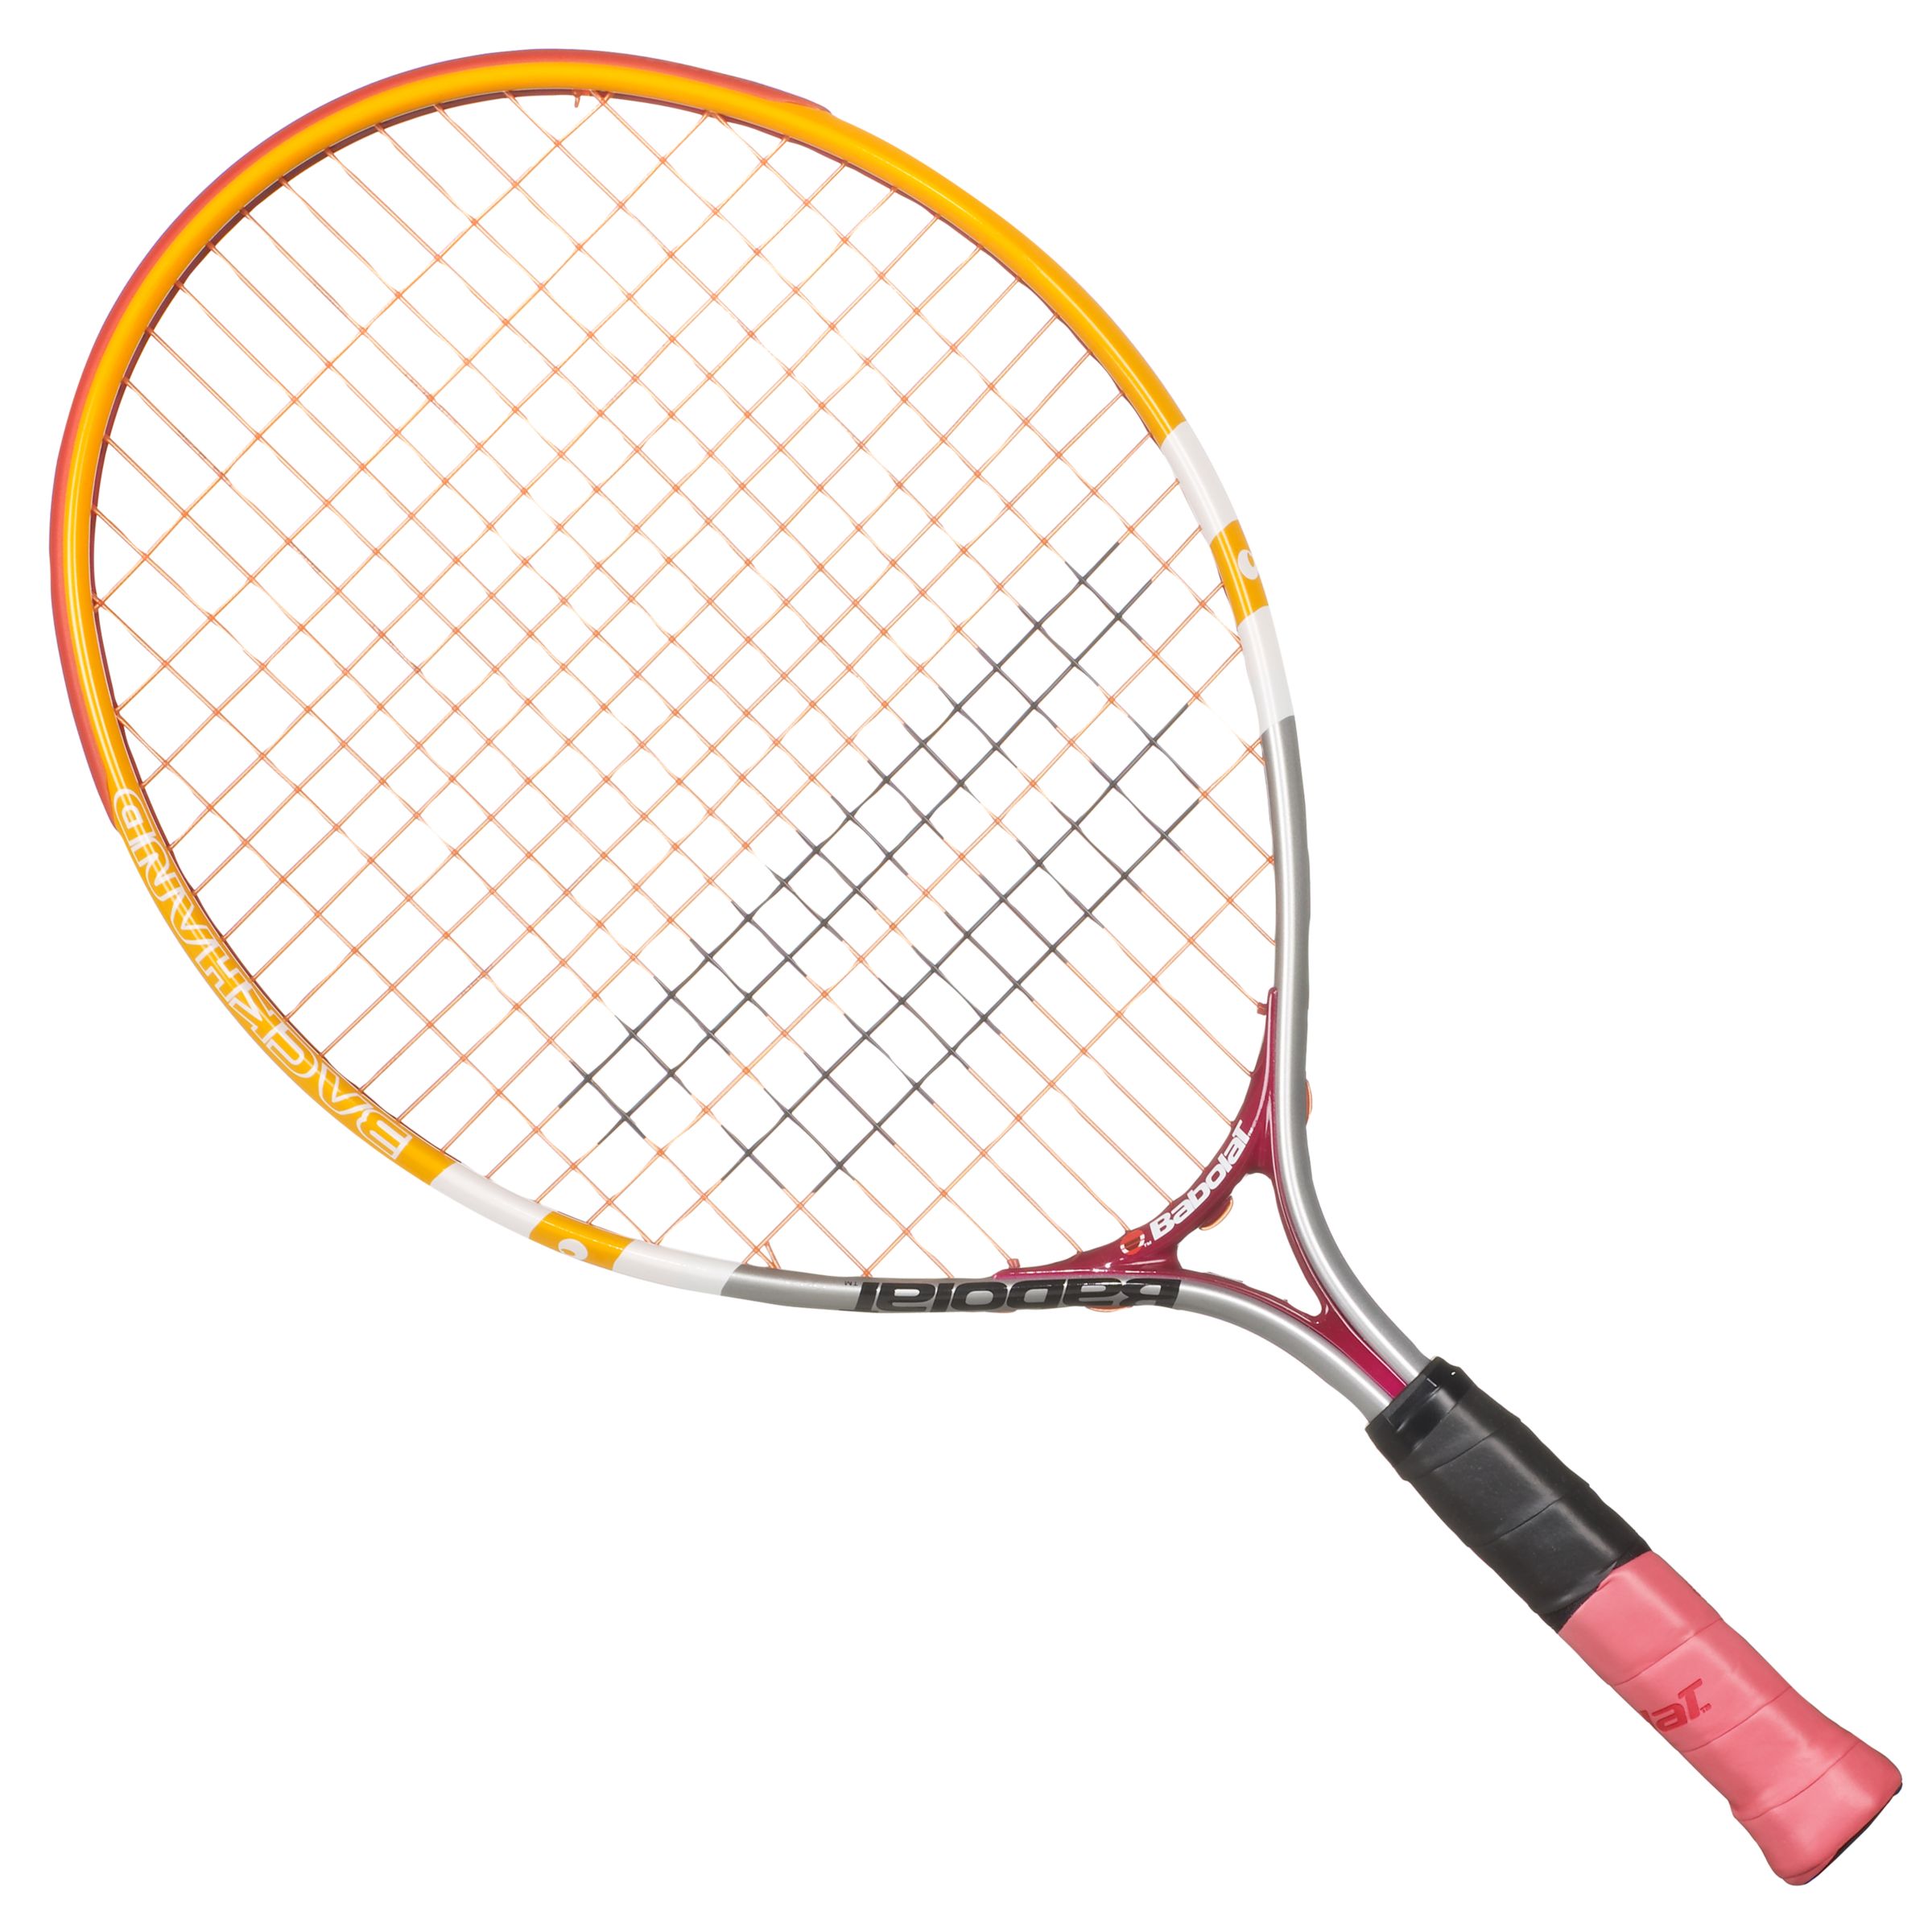 Ballfighter 110 Junior Tennis Racket